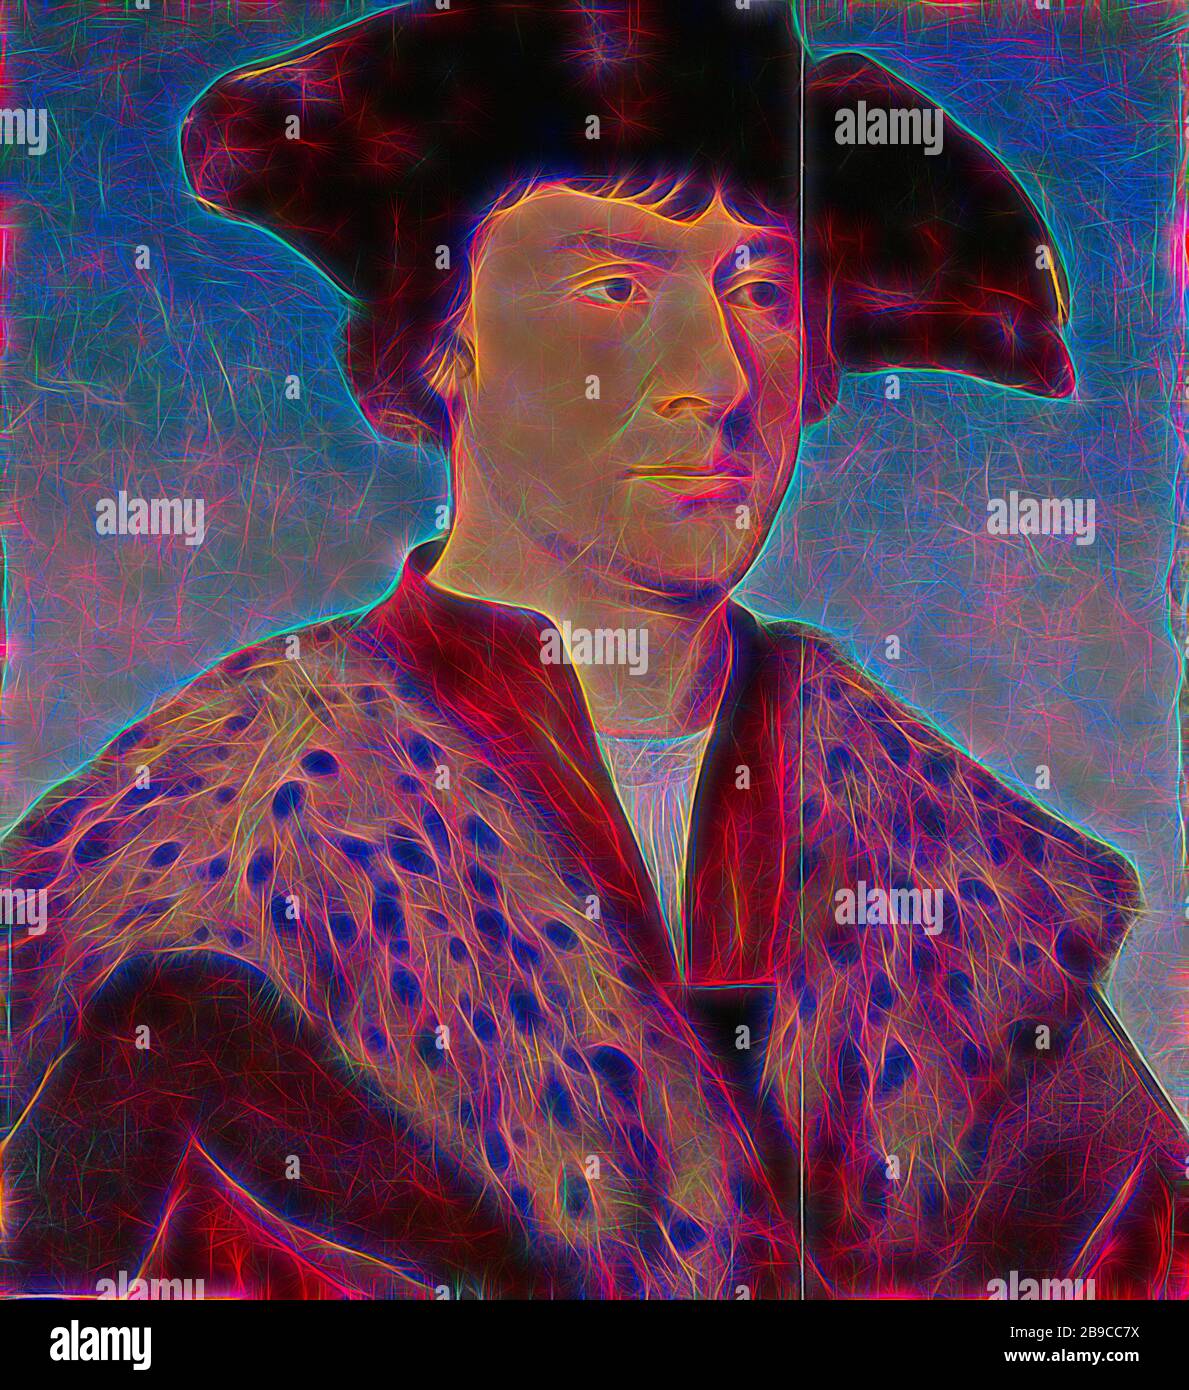 Portrait d'un homme, Portrait d'un homme dans un manteau avec un col en fourrure, avec un chapeau noir sur la tête., Joos van Couve (atelier de), c. 1520 - c. 1530, panneau, peinture à l'huile (peinture), support: h 45,7 cm × W 43,4 cm perspicacité: h 44,9 cm × W 40,8 cm cadre: h 57 cm × W 52,2 cm, repensé par Gibon, design de glanissement chaud et gai de la luminosité et des rayons de lumière radiance. L'art classique réinventé avec une touche moderne. La photographie inspirée du futurisme, qui embrasse l'énergie dynamique de la technologie moderne, du mouvement, de la vitesse et révolutionne la culture. Banque D'Images